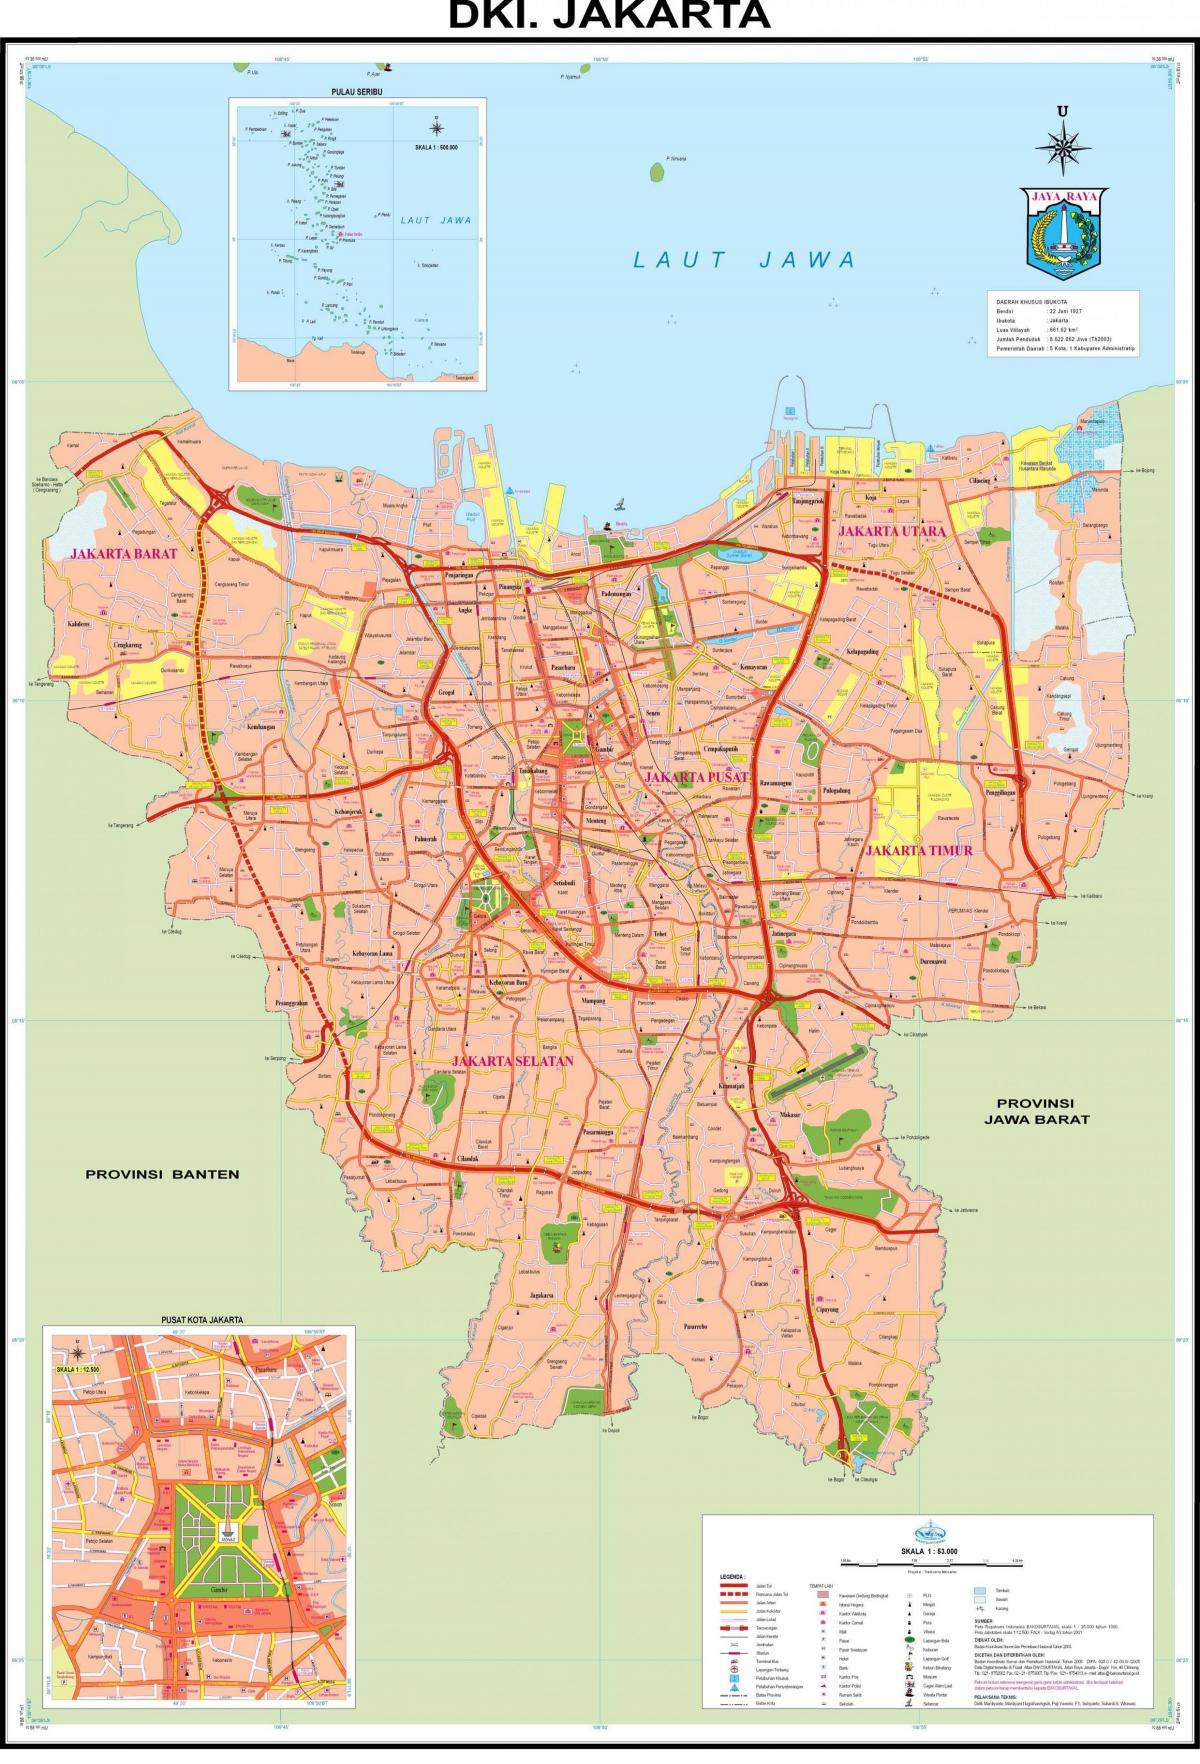 kesk-Jakarta kaart